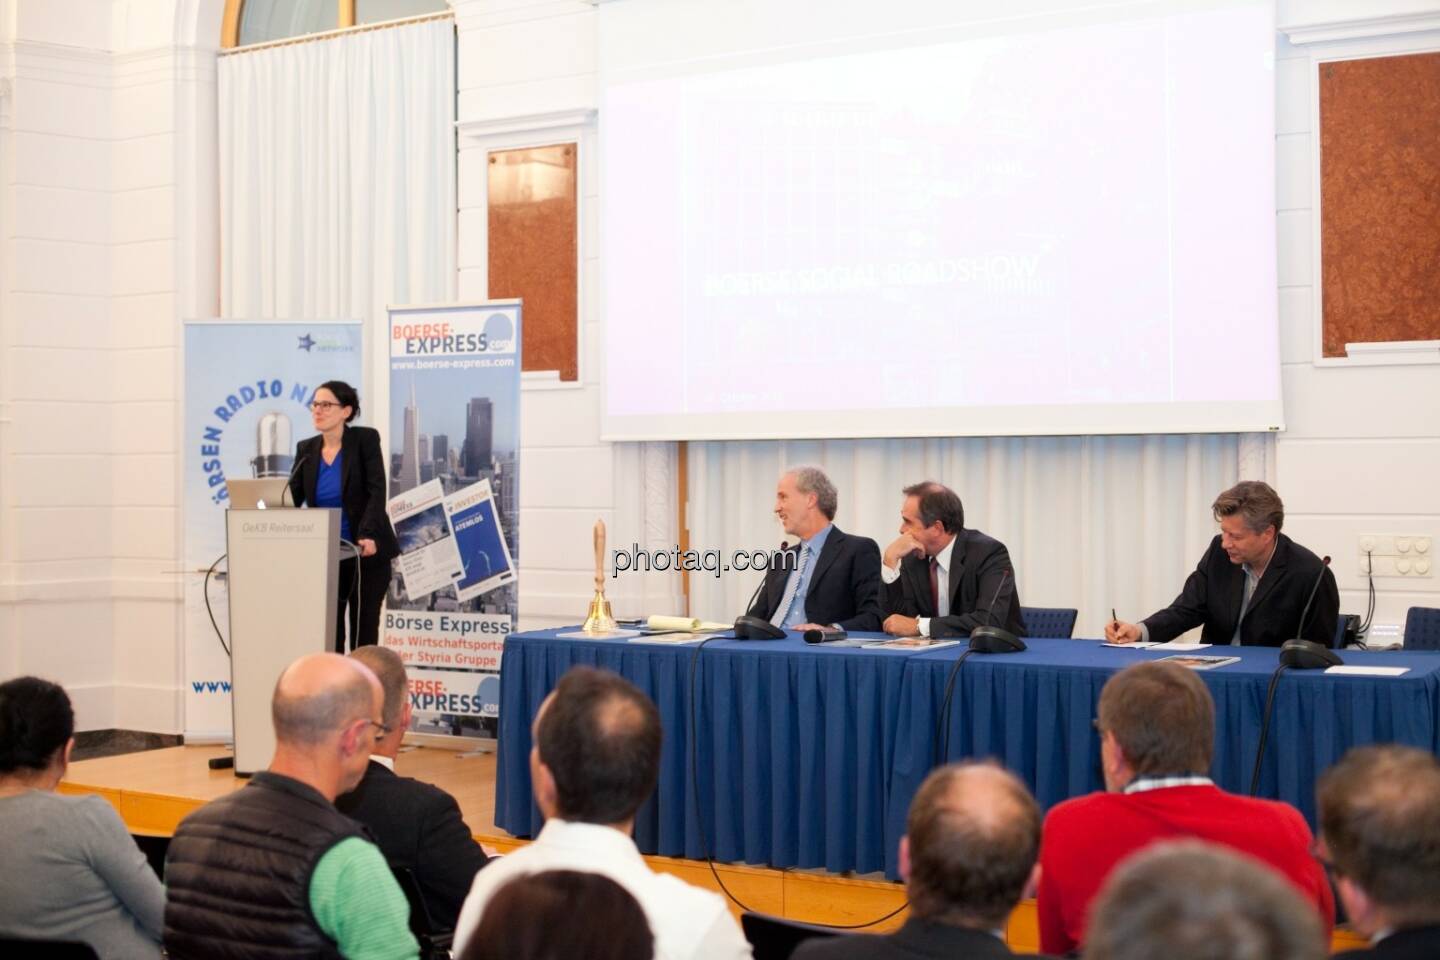 Bettina Schragl (Immofinanz), Christian Drastil (BSN), Wolfgang Matejka (Matejka & Partner), Robert Gillinger (Börse Express)